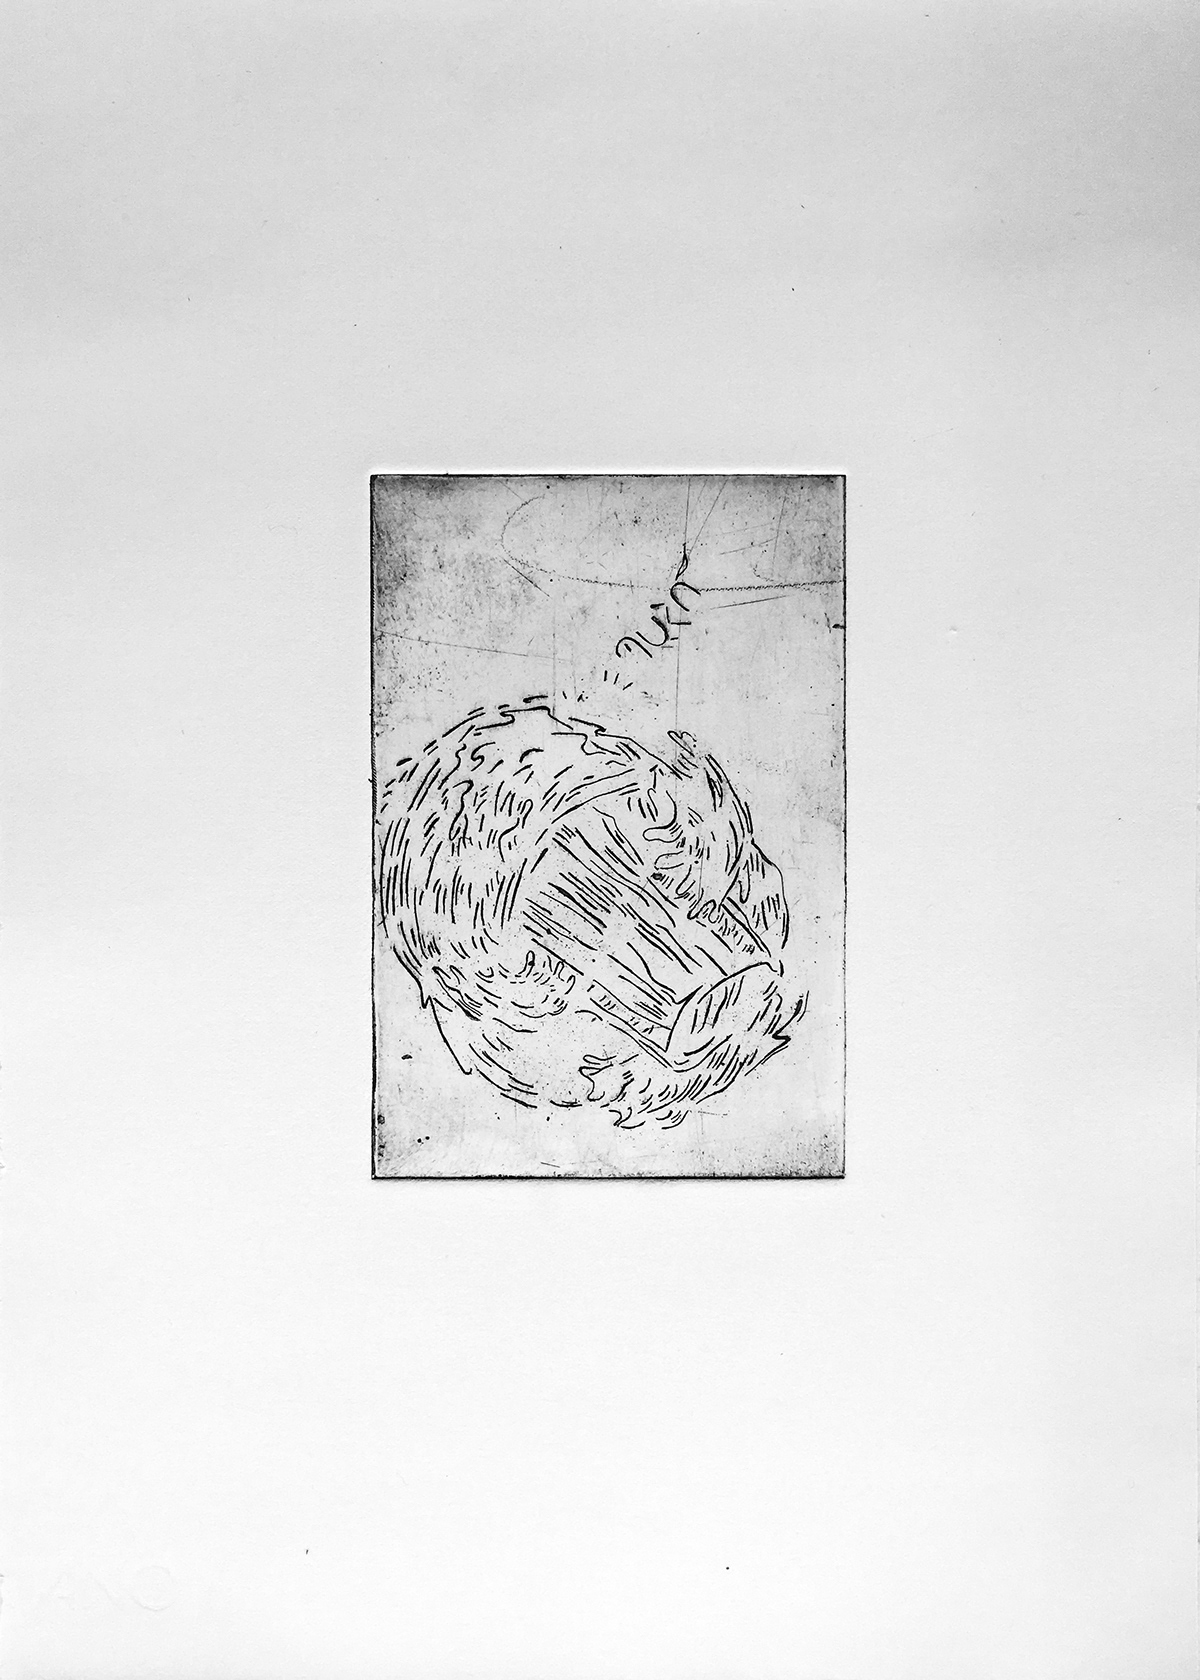 DryPoint engraving etching printmaking prints